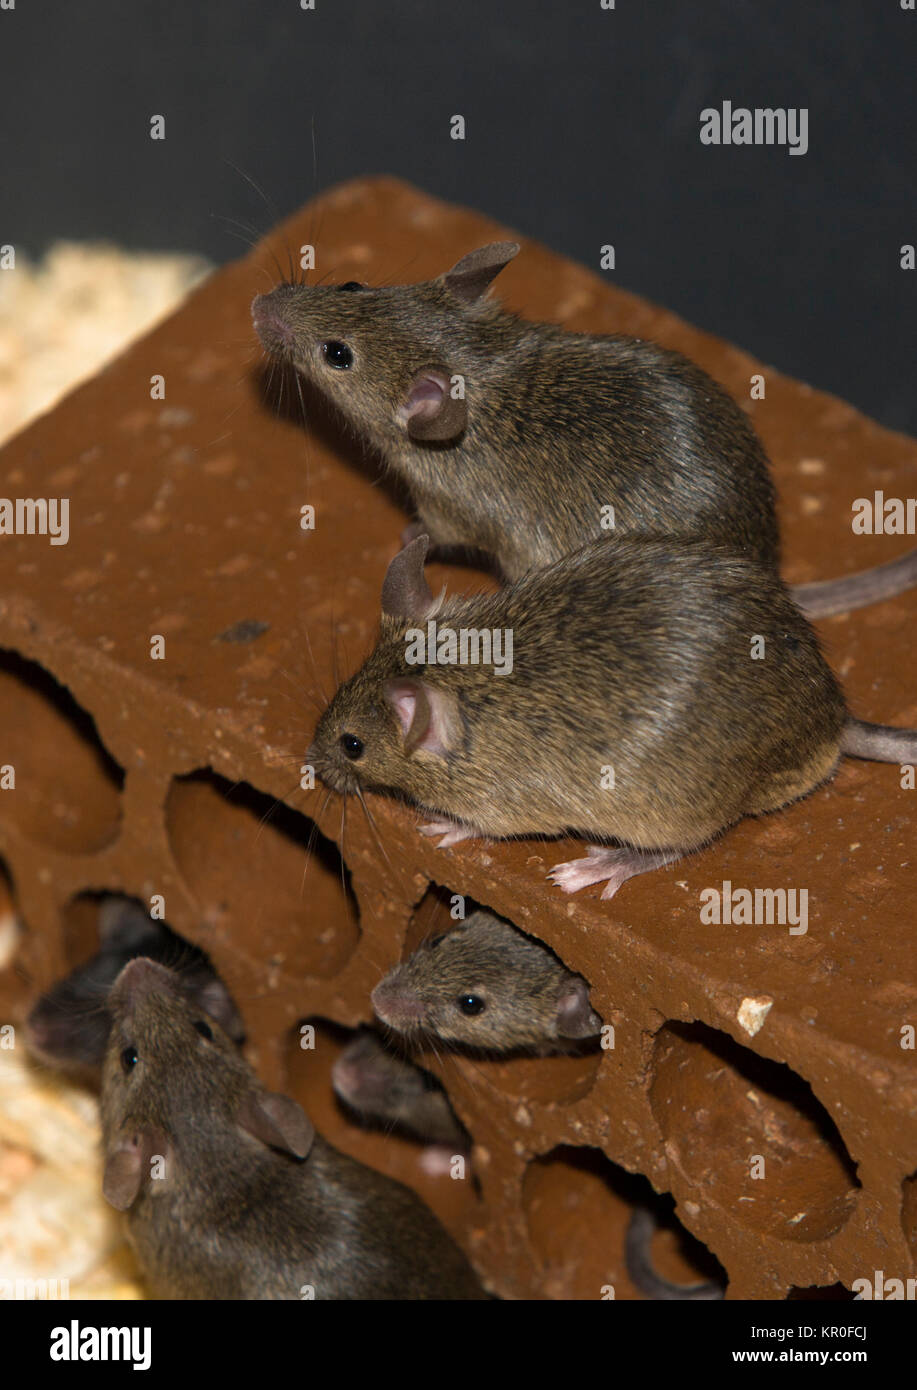 Mice on brick Stock Photo